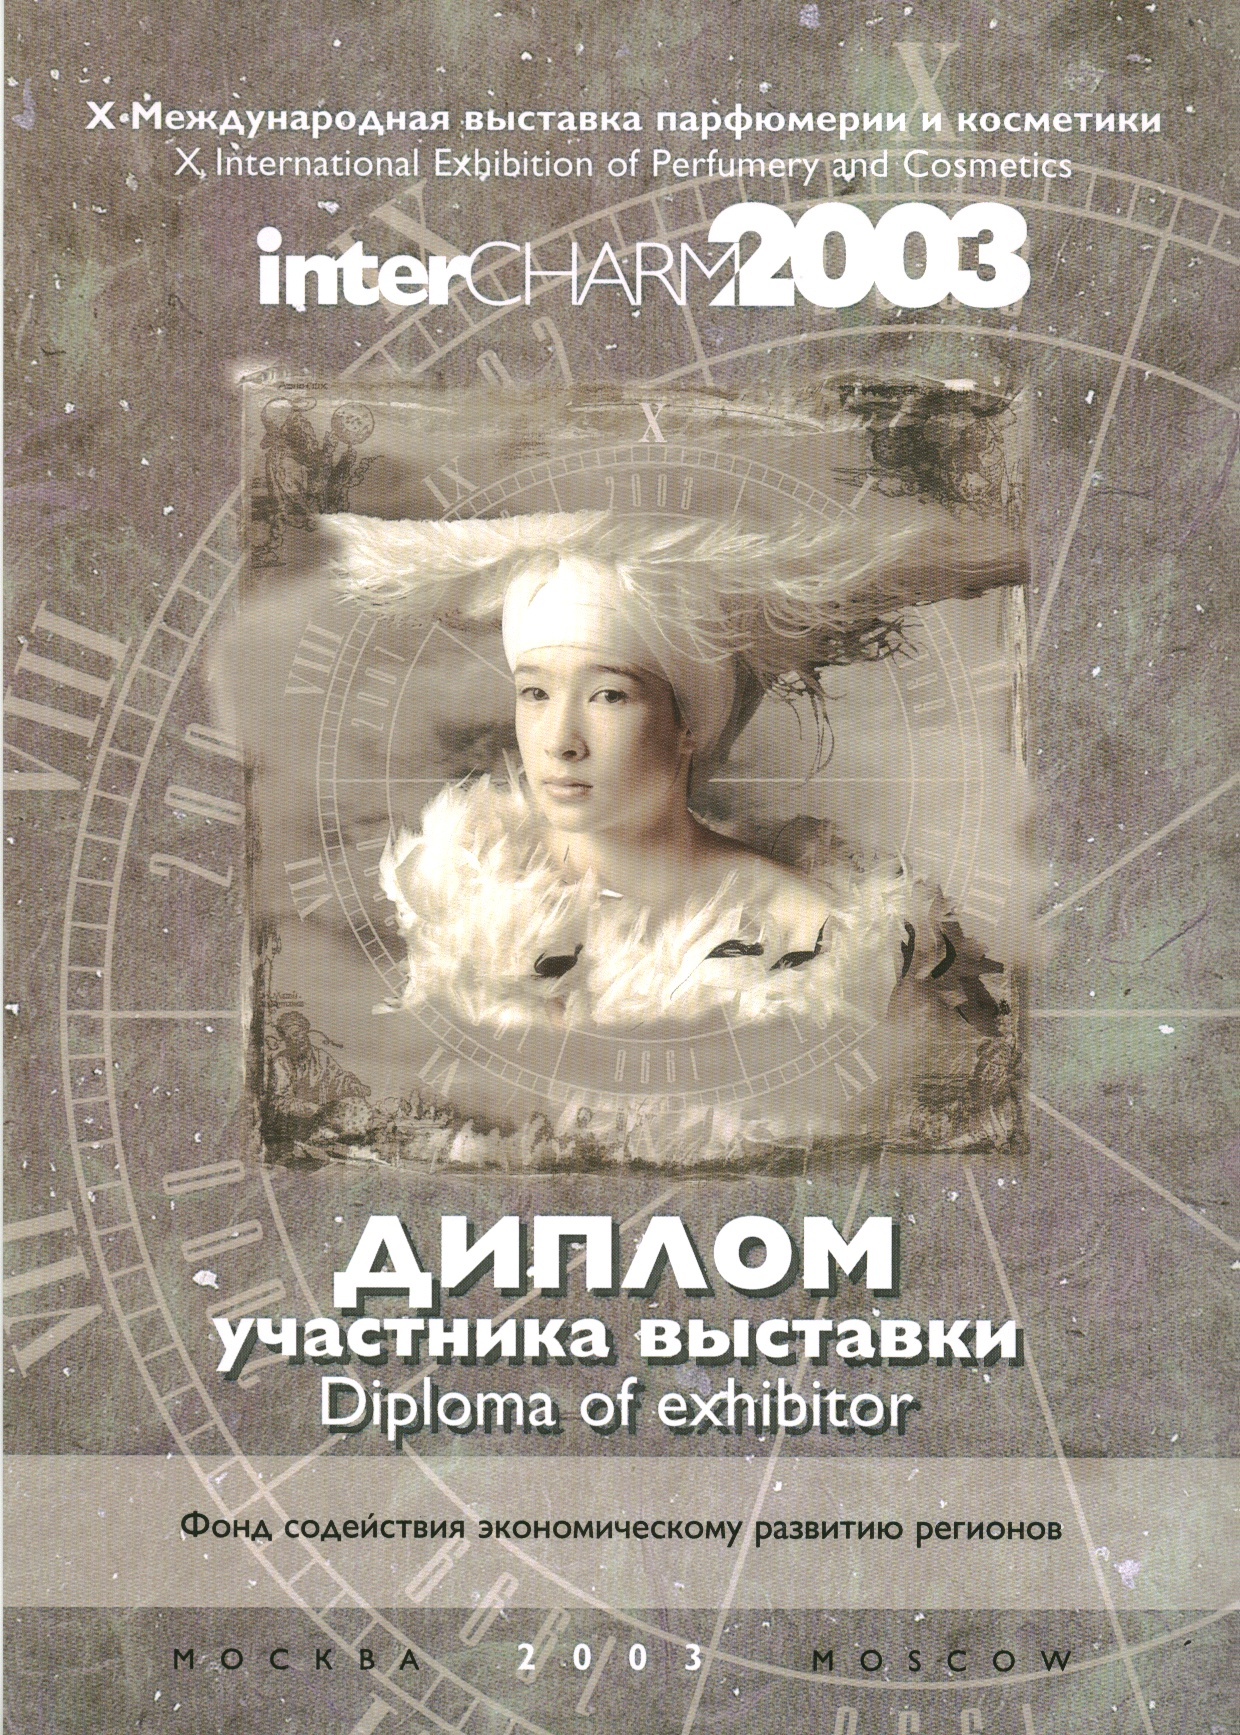 Диплом участника выставки INTERCharm 2003